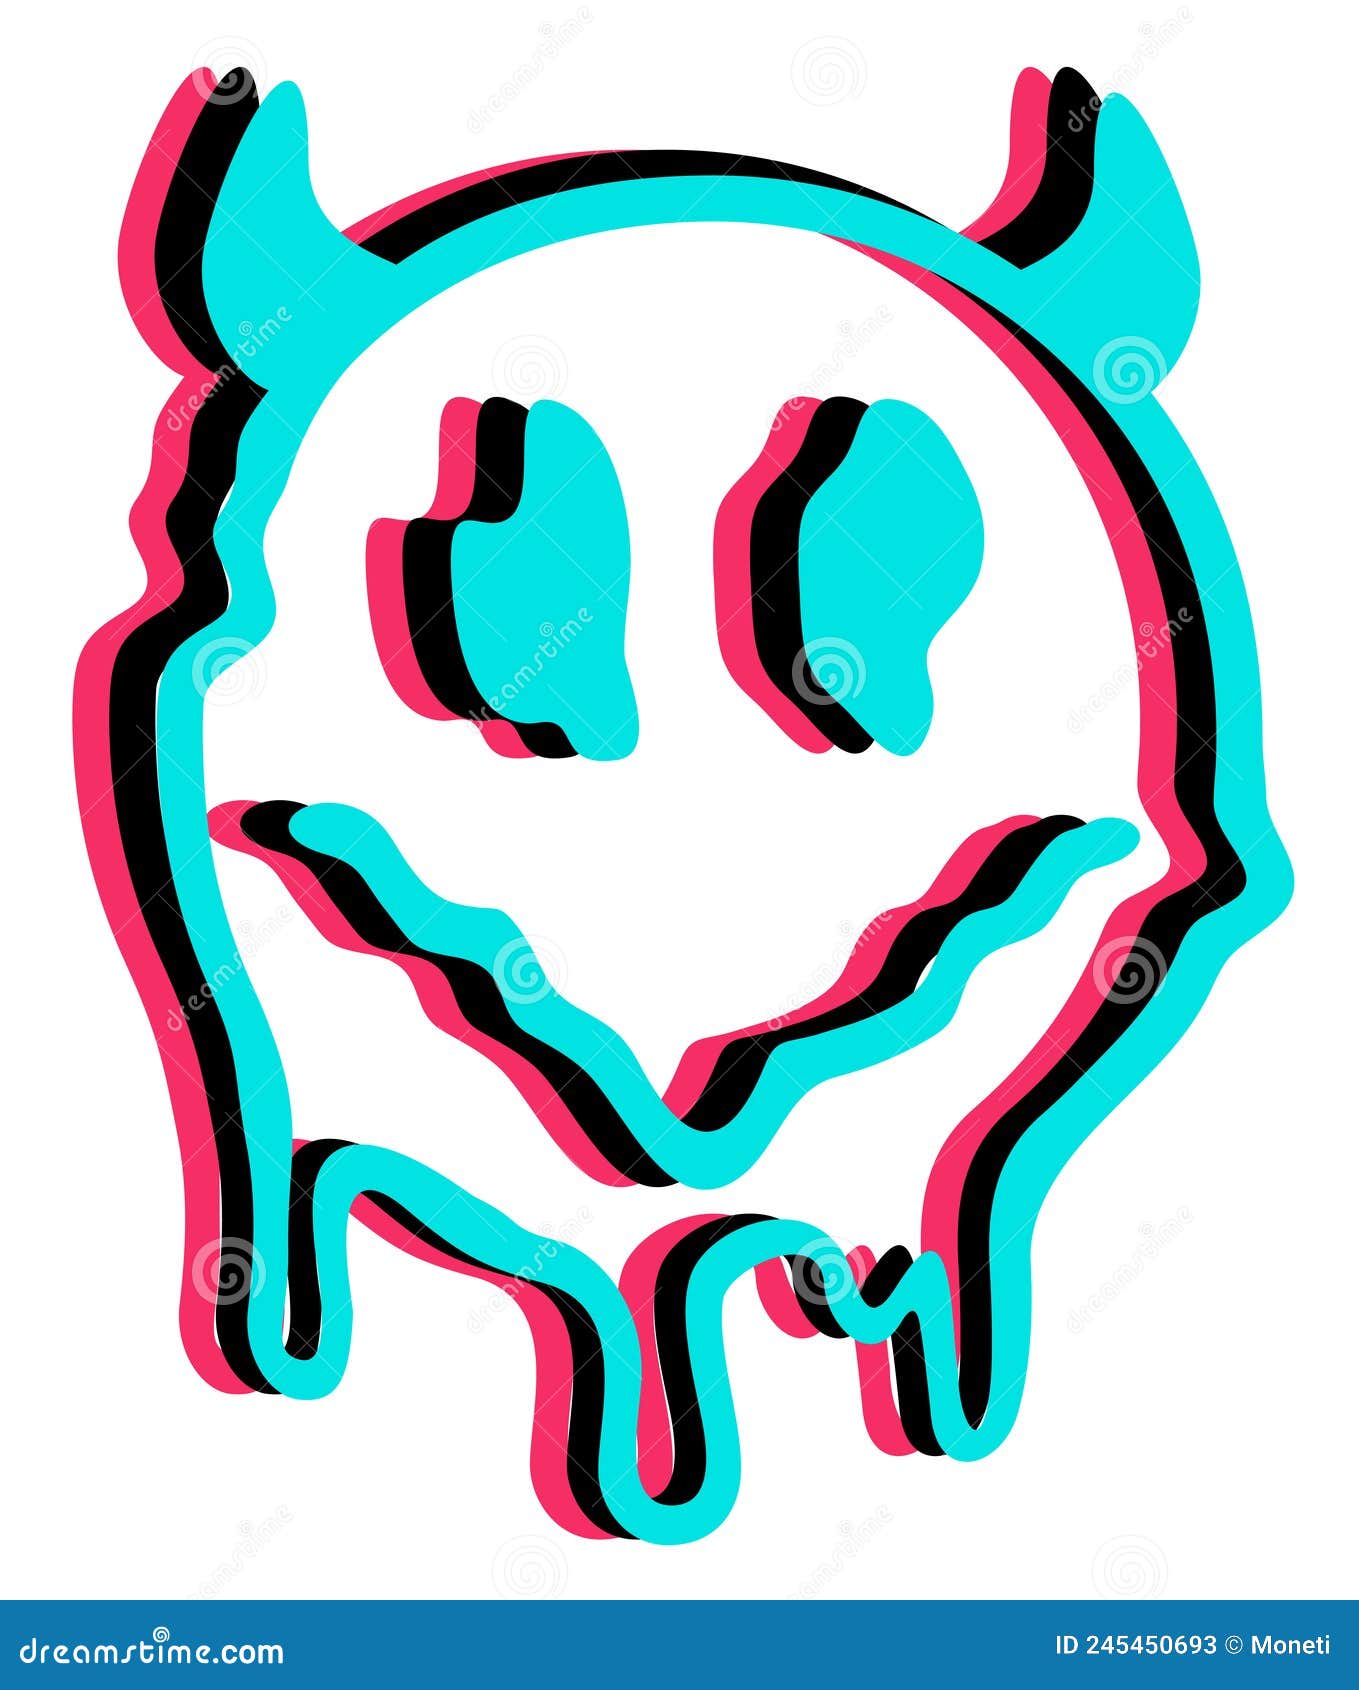 Rosto de emoji engraçado com chifres de diabo na impressão de t